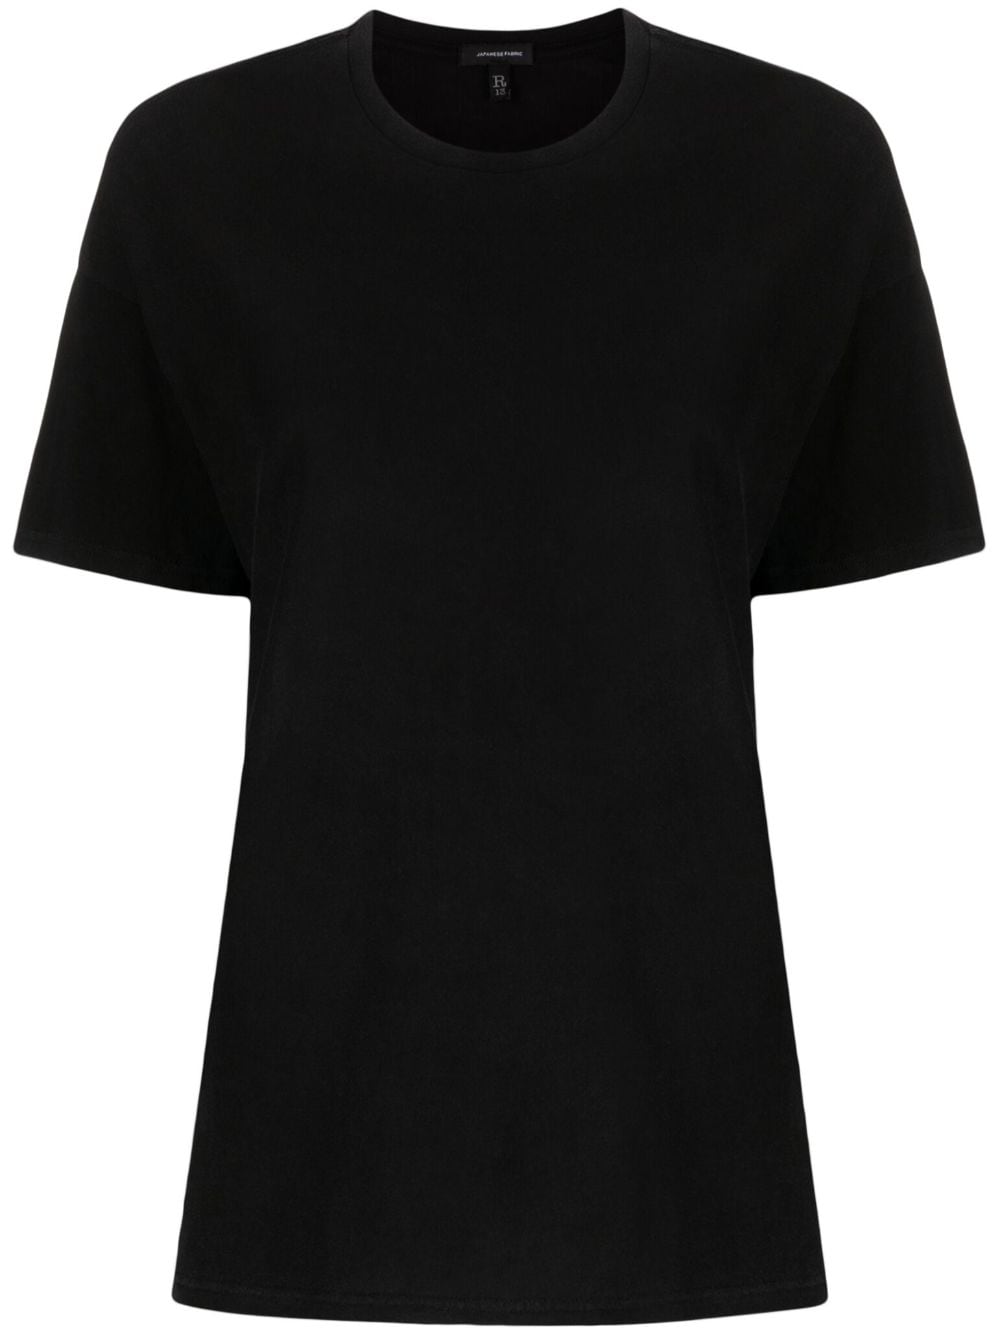 R13 cotton-blend T-shirt - Black